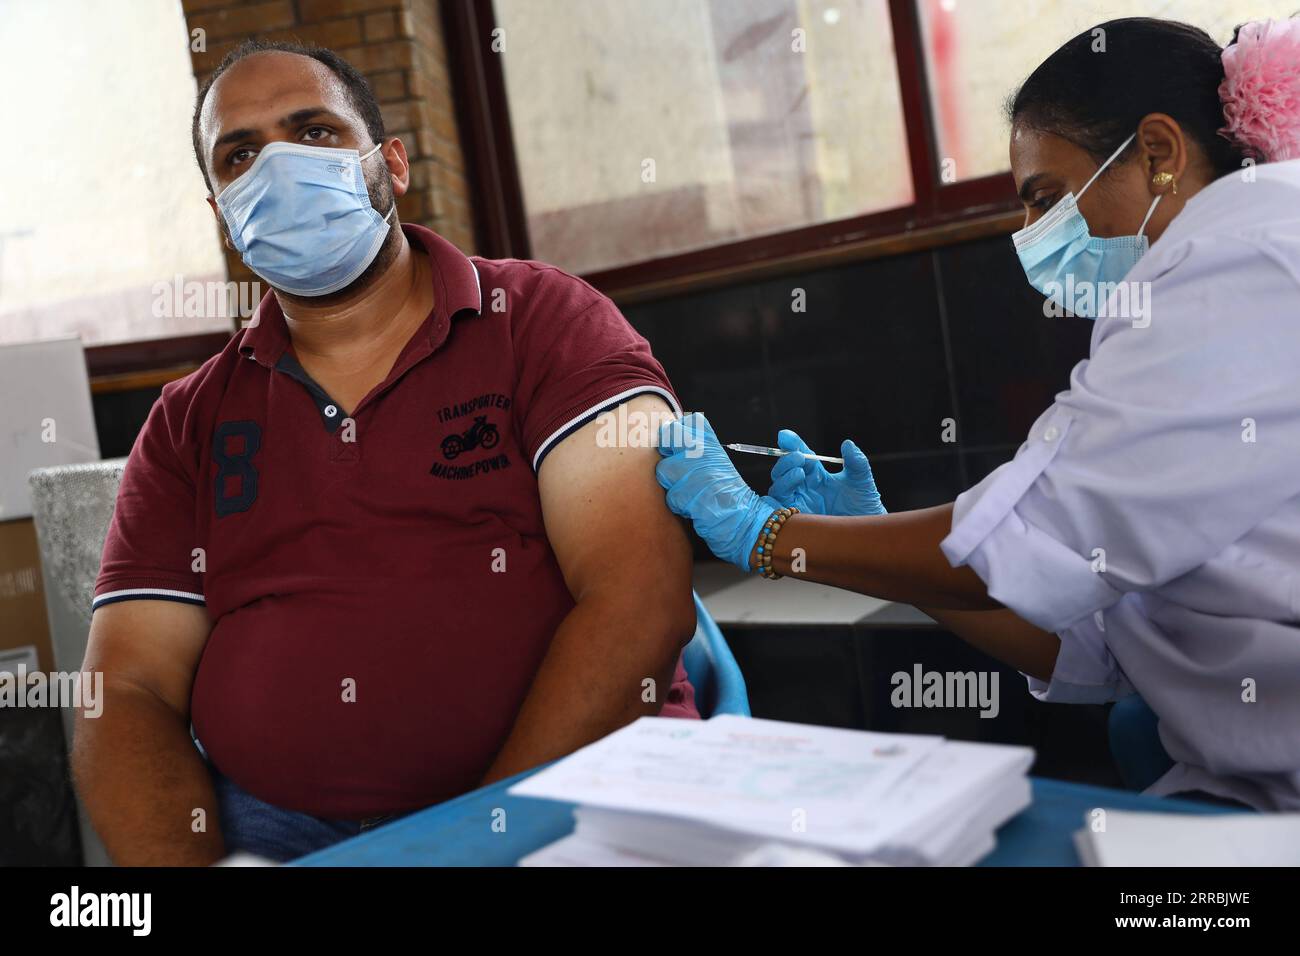 210926 -- KAIRO, 26. September 2021 -- Ein Arzt impfen einen Mann im Rod El Farag Jugendzentrum in Kairo, Ägypten, 26. September 2021. Ägypten eröffnete am Sonntag ein Jugendzentrum in jeder Provinz, um Menschen mit COVID-19-Impfstoff zu impfen, um seine Impfkampagne voranzutreiben. ÄGYPTEN-KAIRO-JUGENDZENTRUM-IMPFUNG AhmedxGomaa PUBLICATIONxNOTxINxCHN Stockfoto